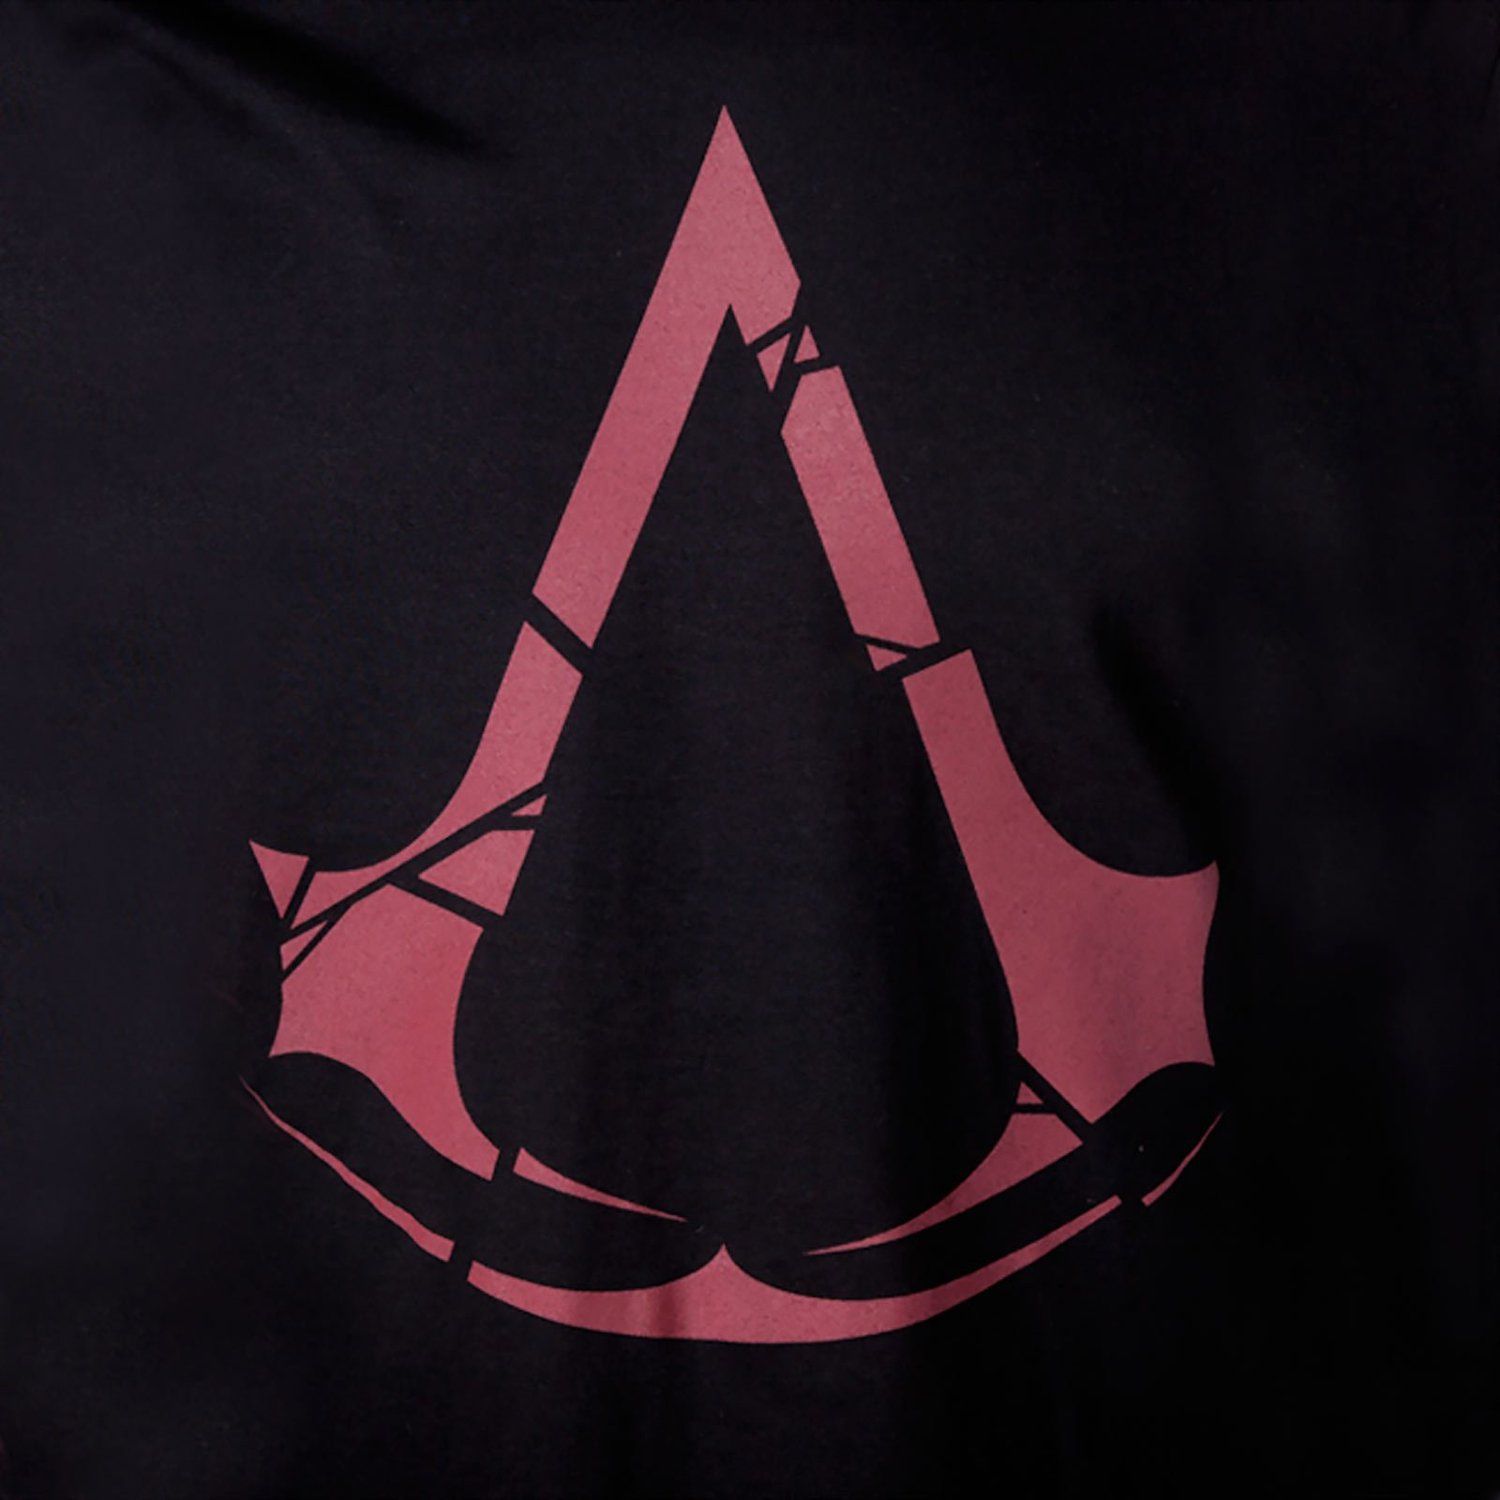 Assassin's Creed : Rogue - Downfall (어쌔신크리드 로그) [긴박, 장엄, 좌절, 런치 트레일러]